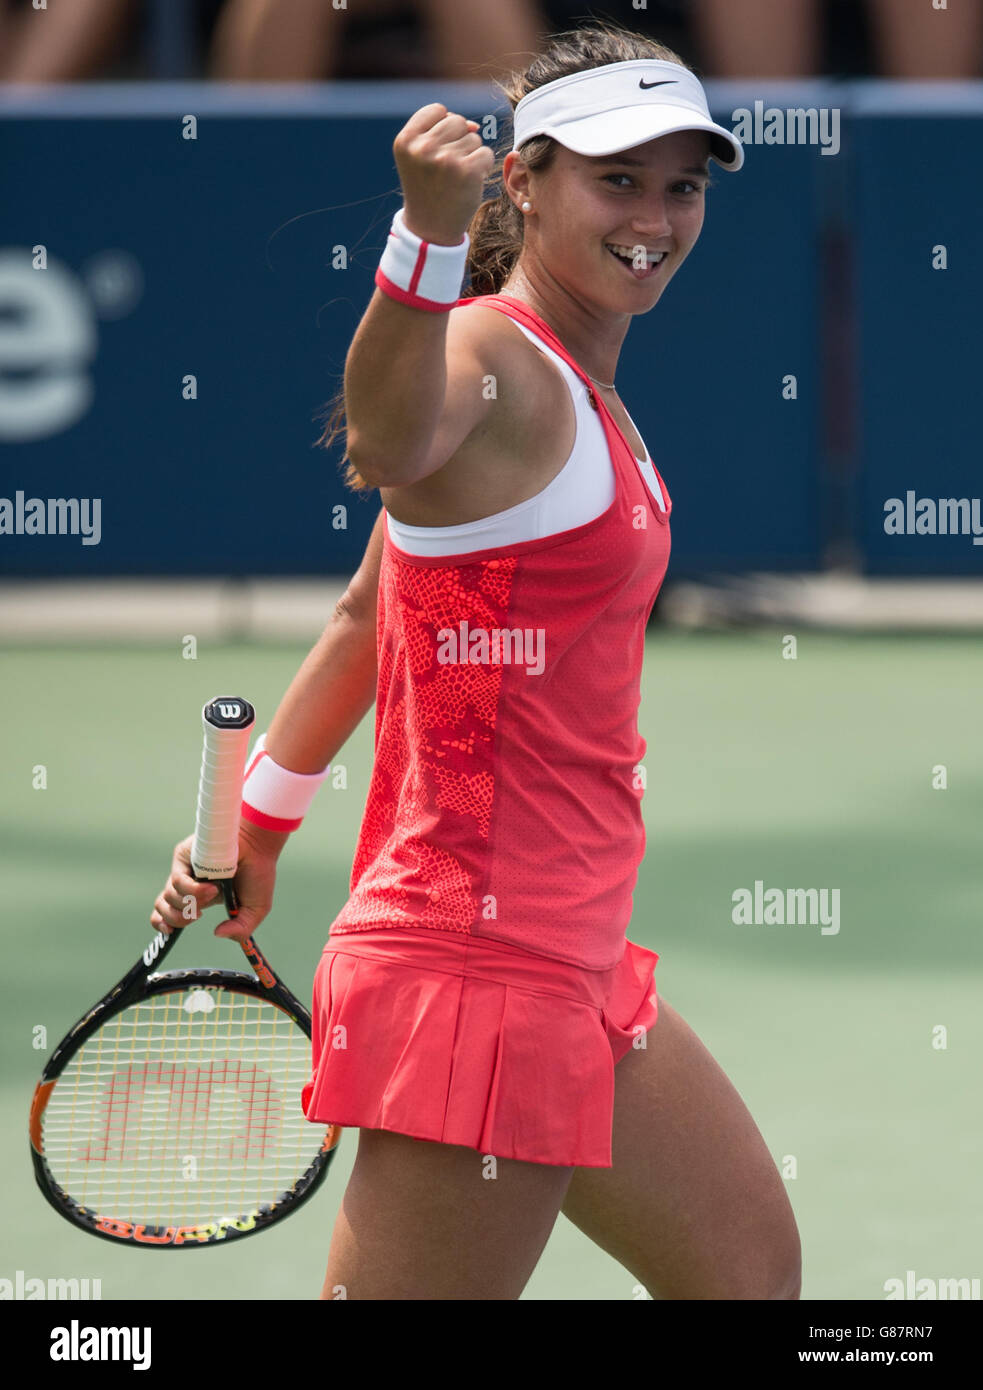 S singoli match contro Heather Watson il giorno uno degli US Open al US Open al Billie Jean King National Tennis Center il 31 2015 agosto a New York, USA. Foto Stock